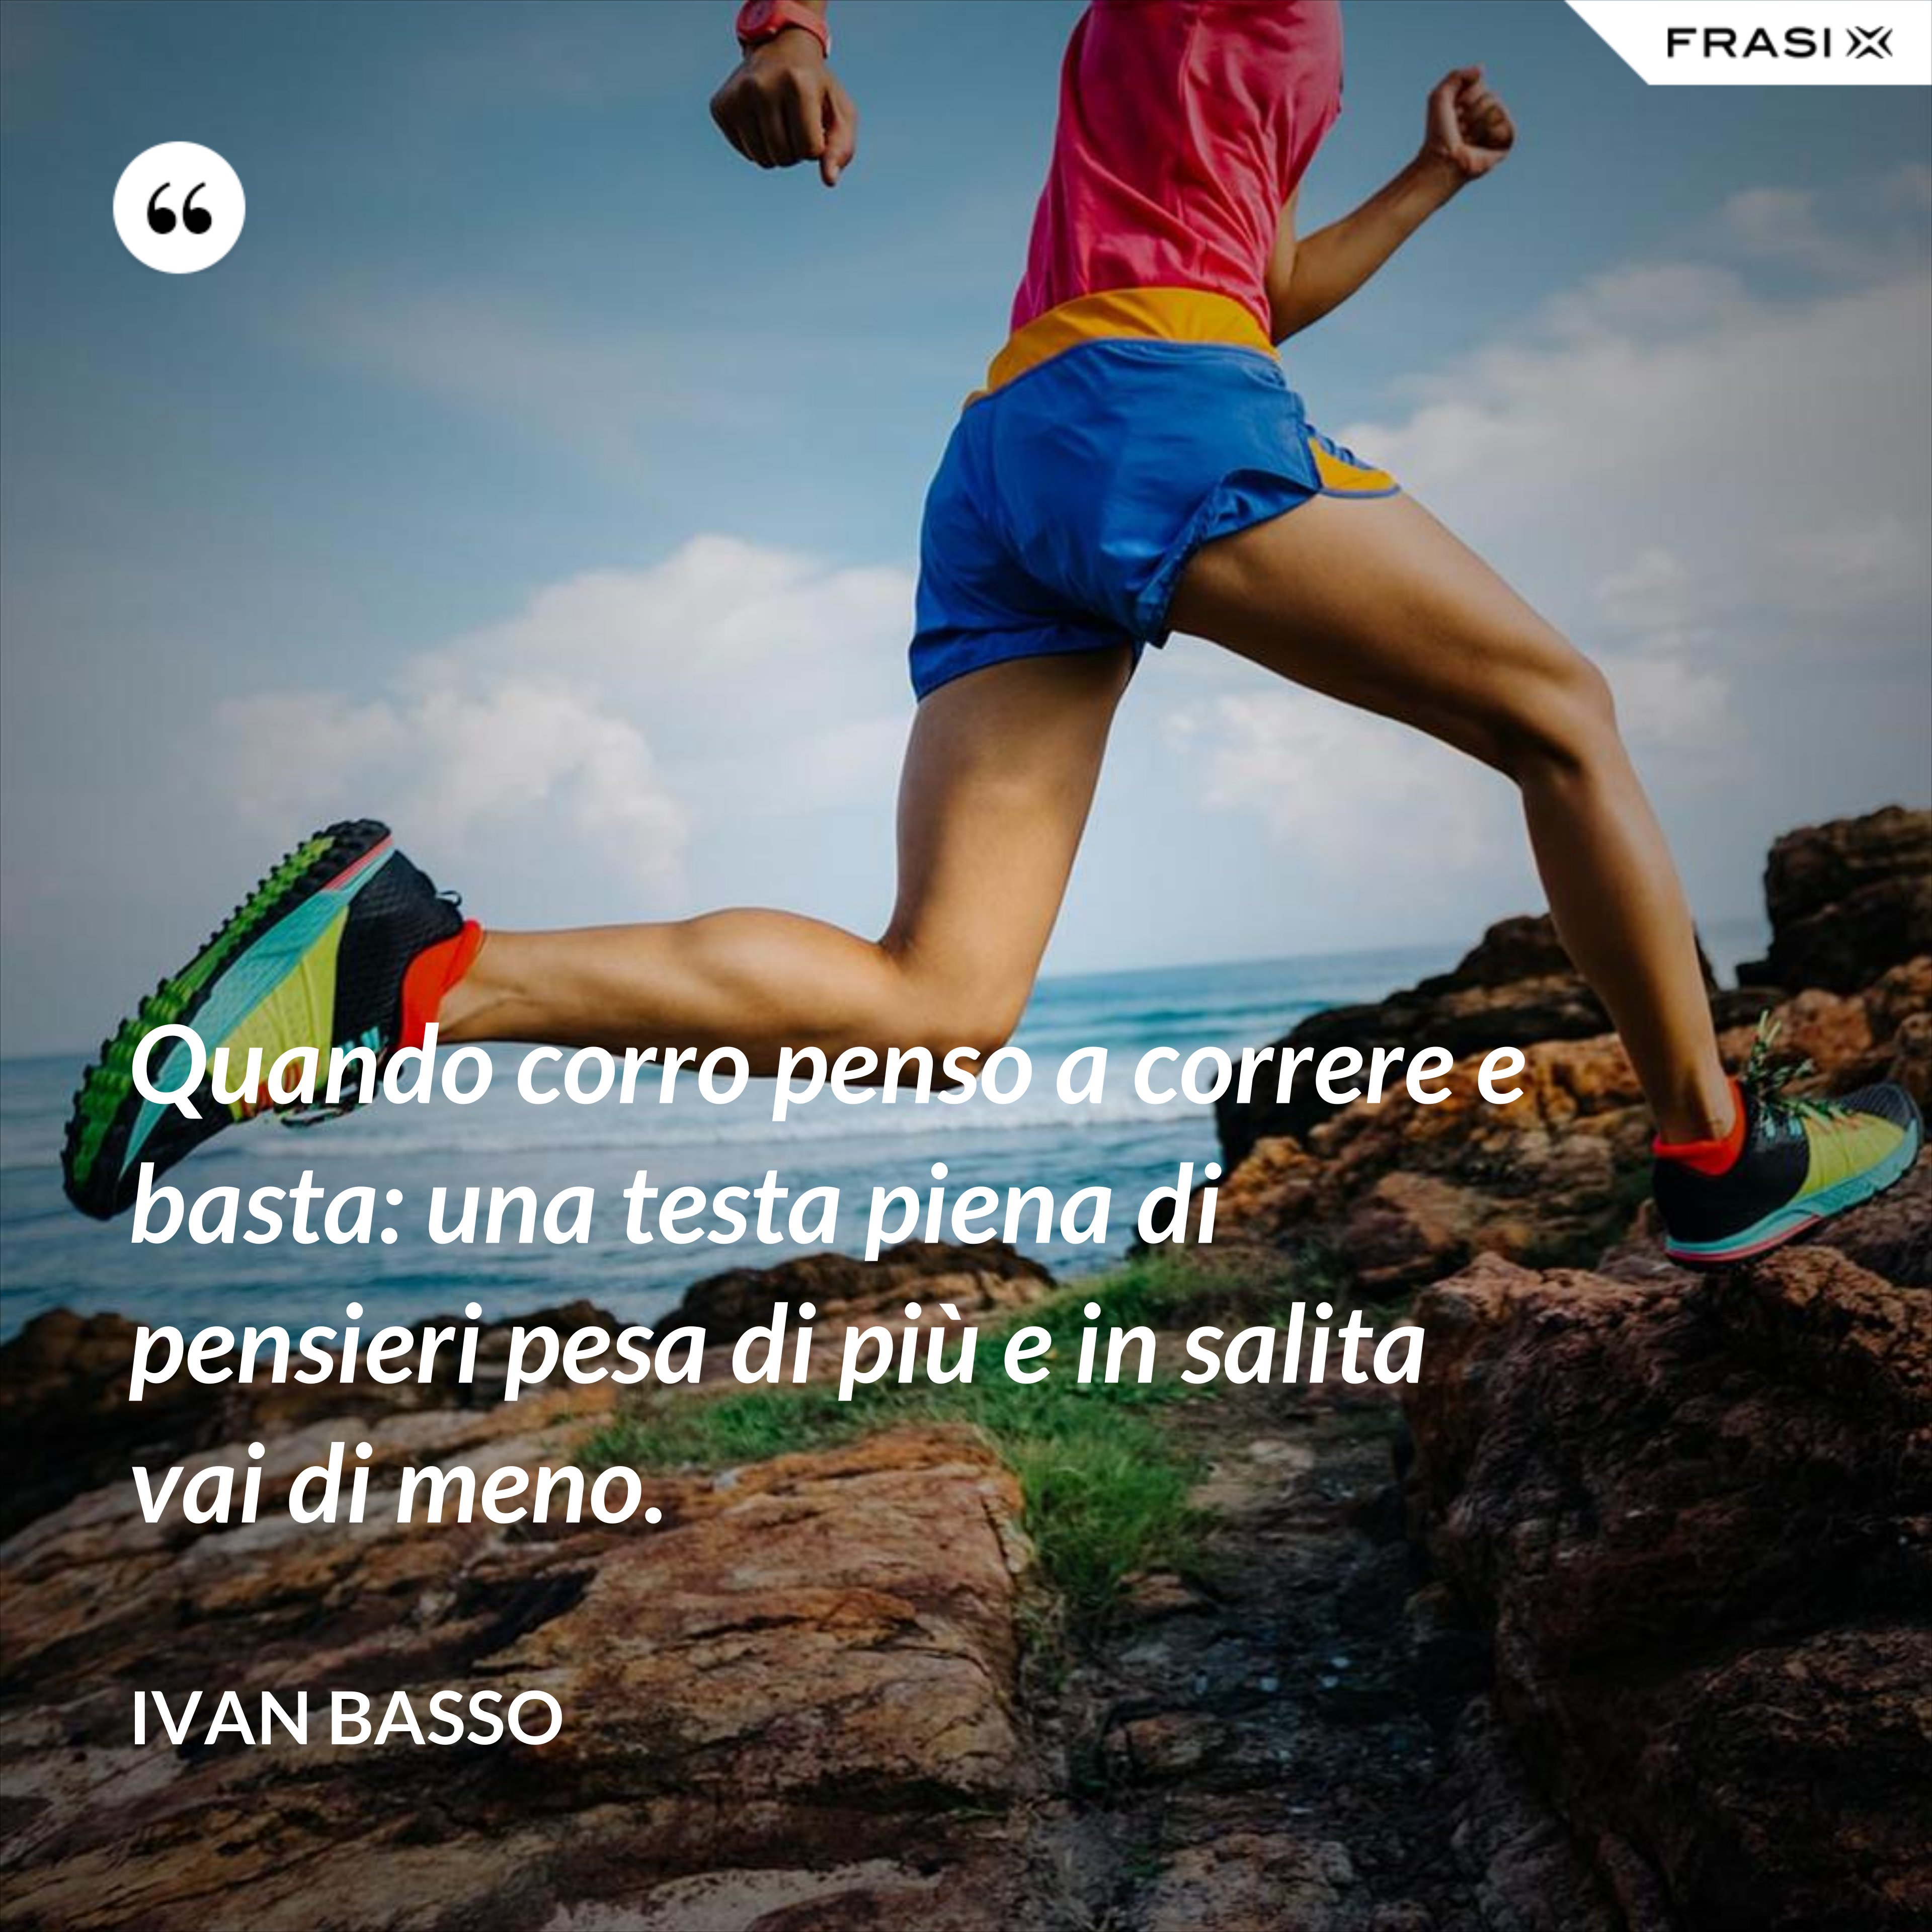 Quando corro penso a correre e basta: una testa piena di pensieri pesa di più e in salita vai di meno. - Ivan Basso